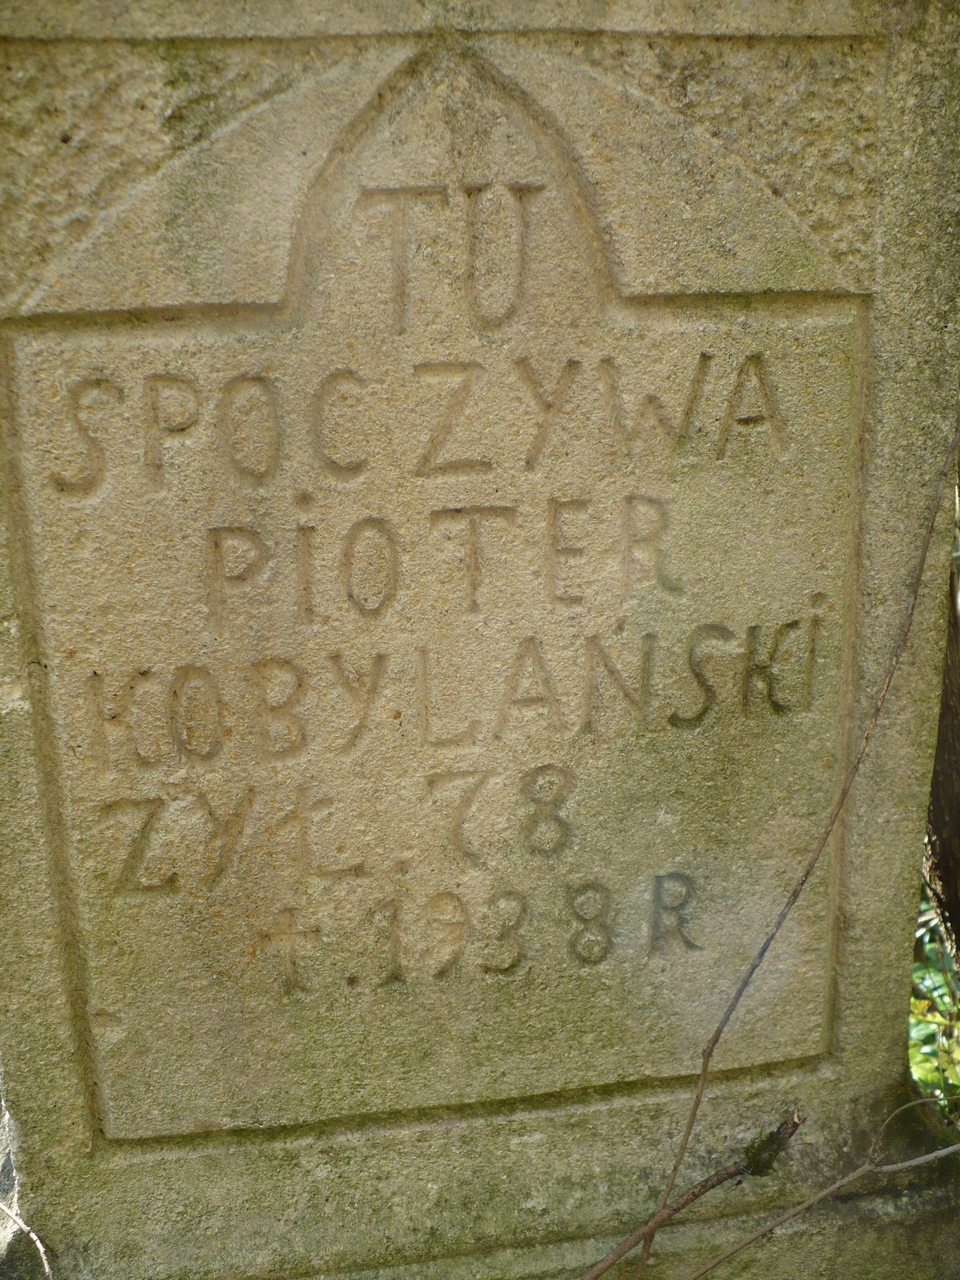 Nagrobek Piotra Kobylańskiego, cmentarz w Czerwonogrodzie (Nyrkowie), stan z roku 2005